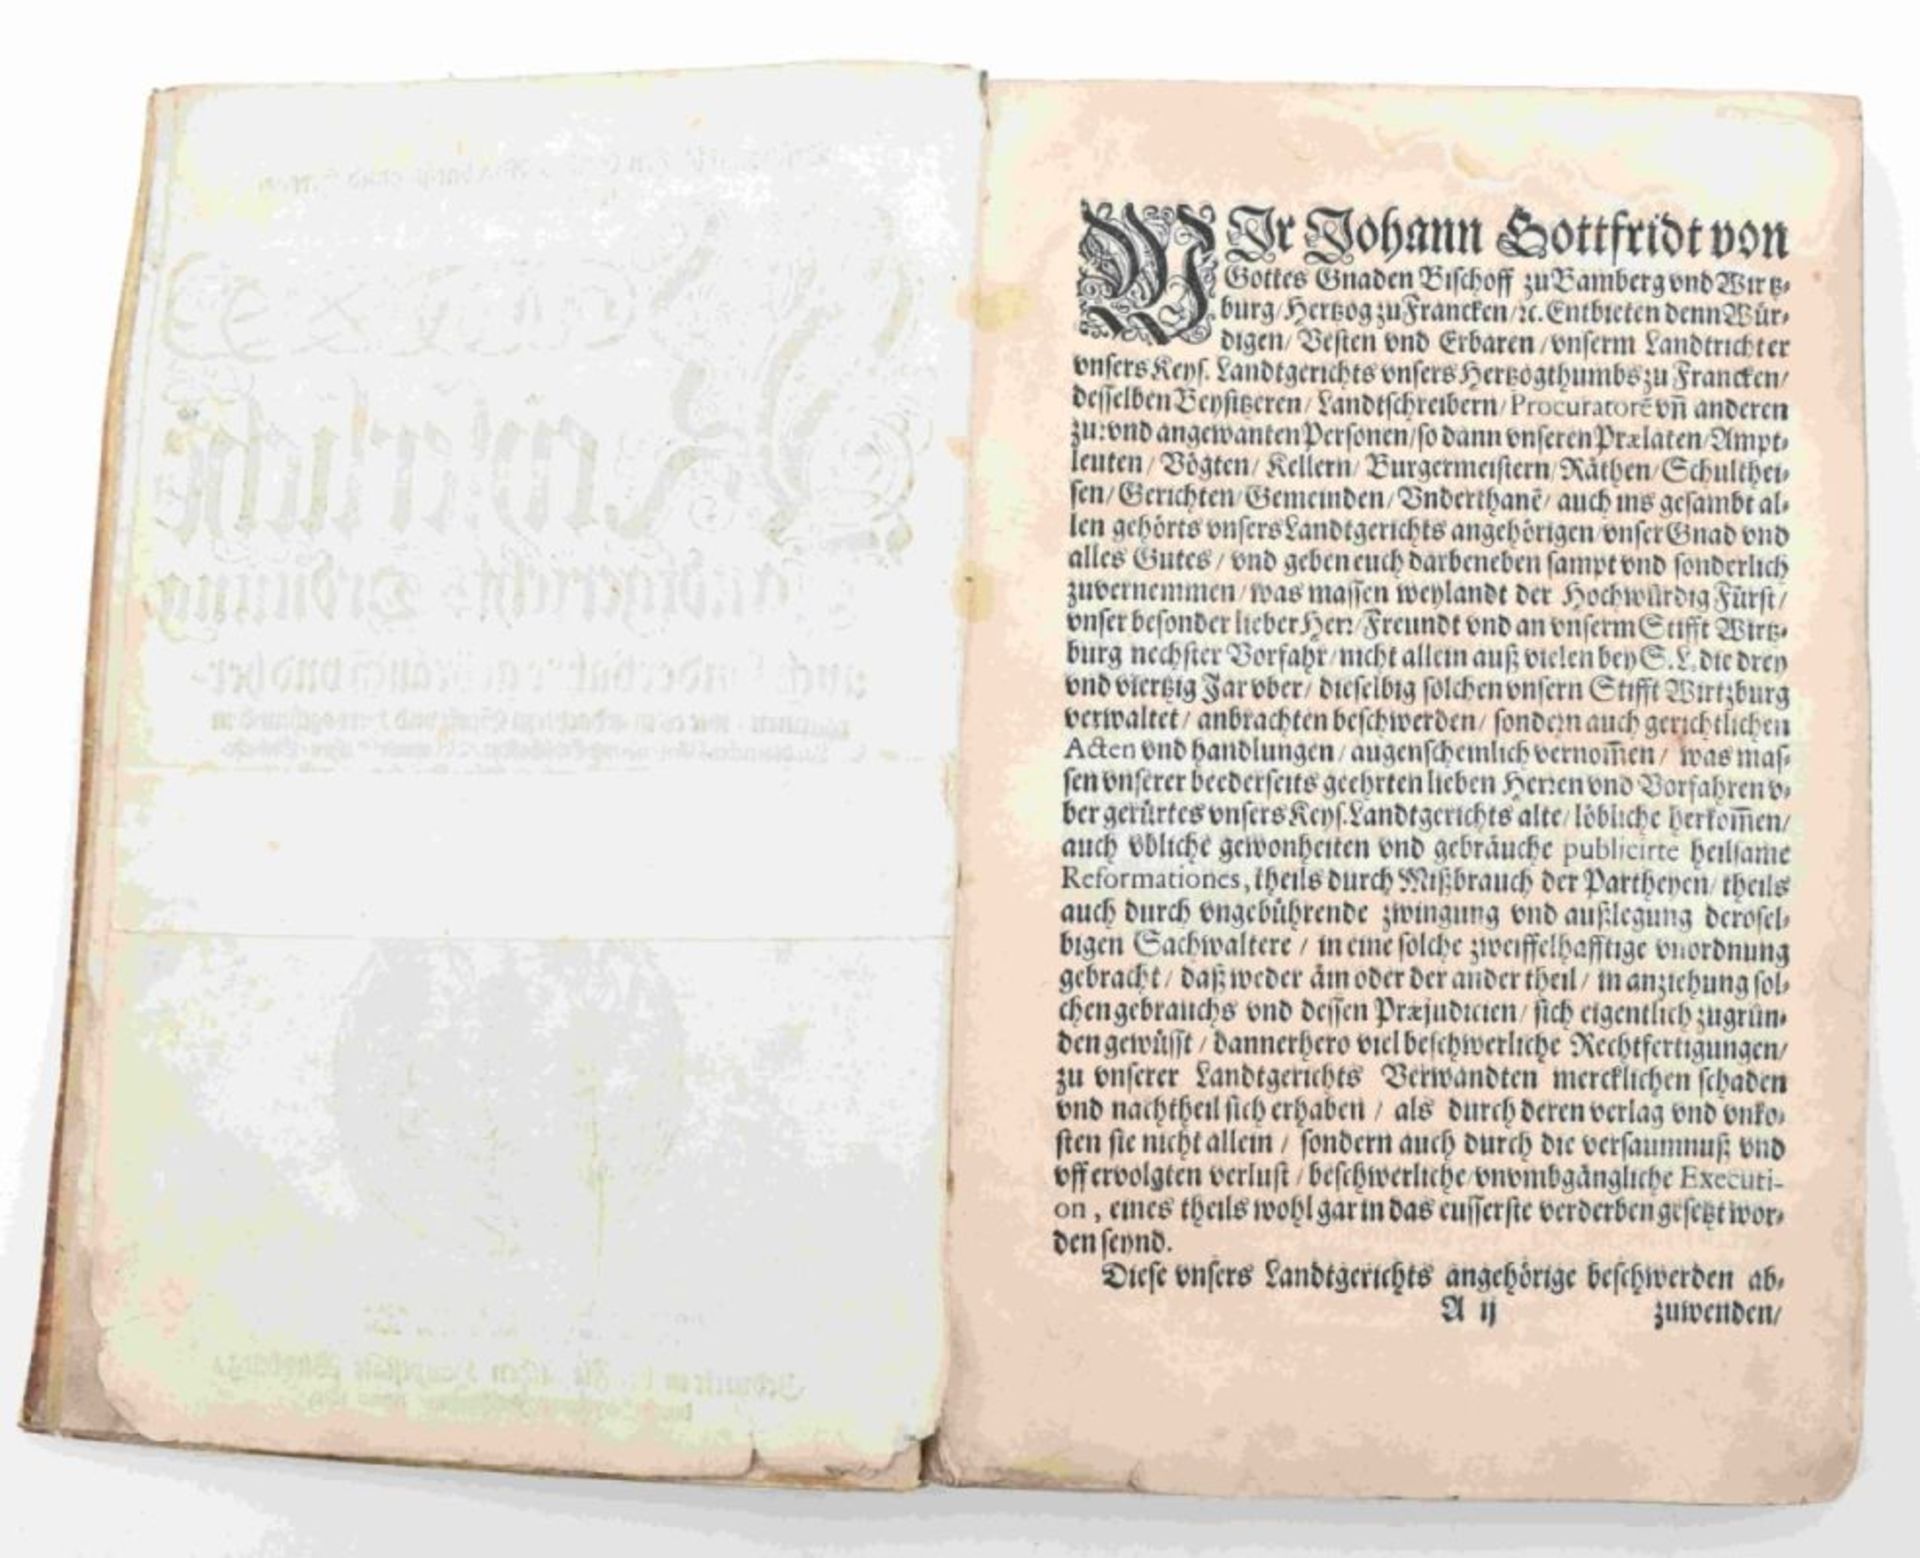 Kaiserliche Landgerichtsordnung, Würzburg, 1619 - Image 6 of 6